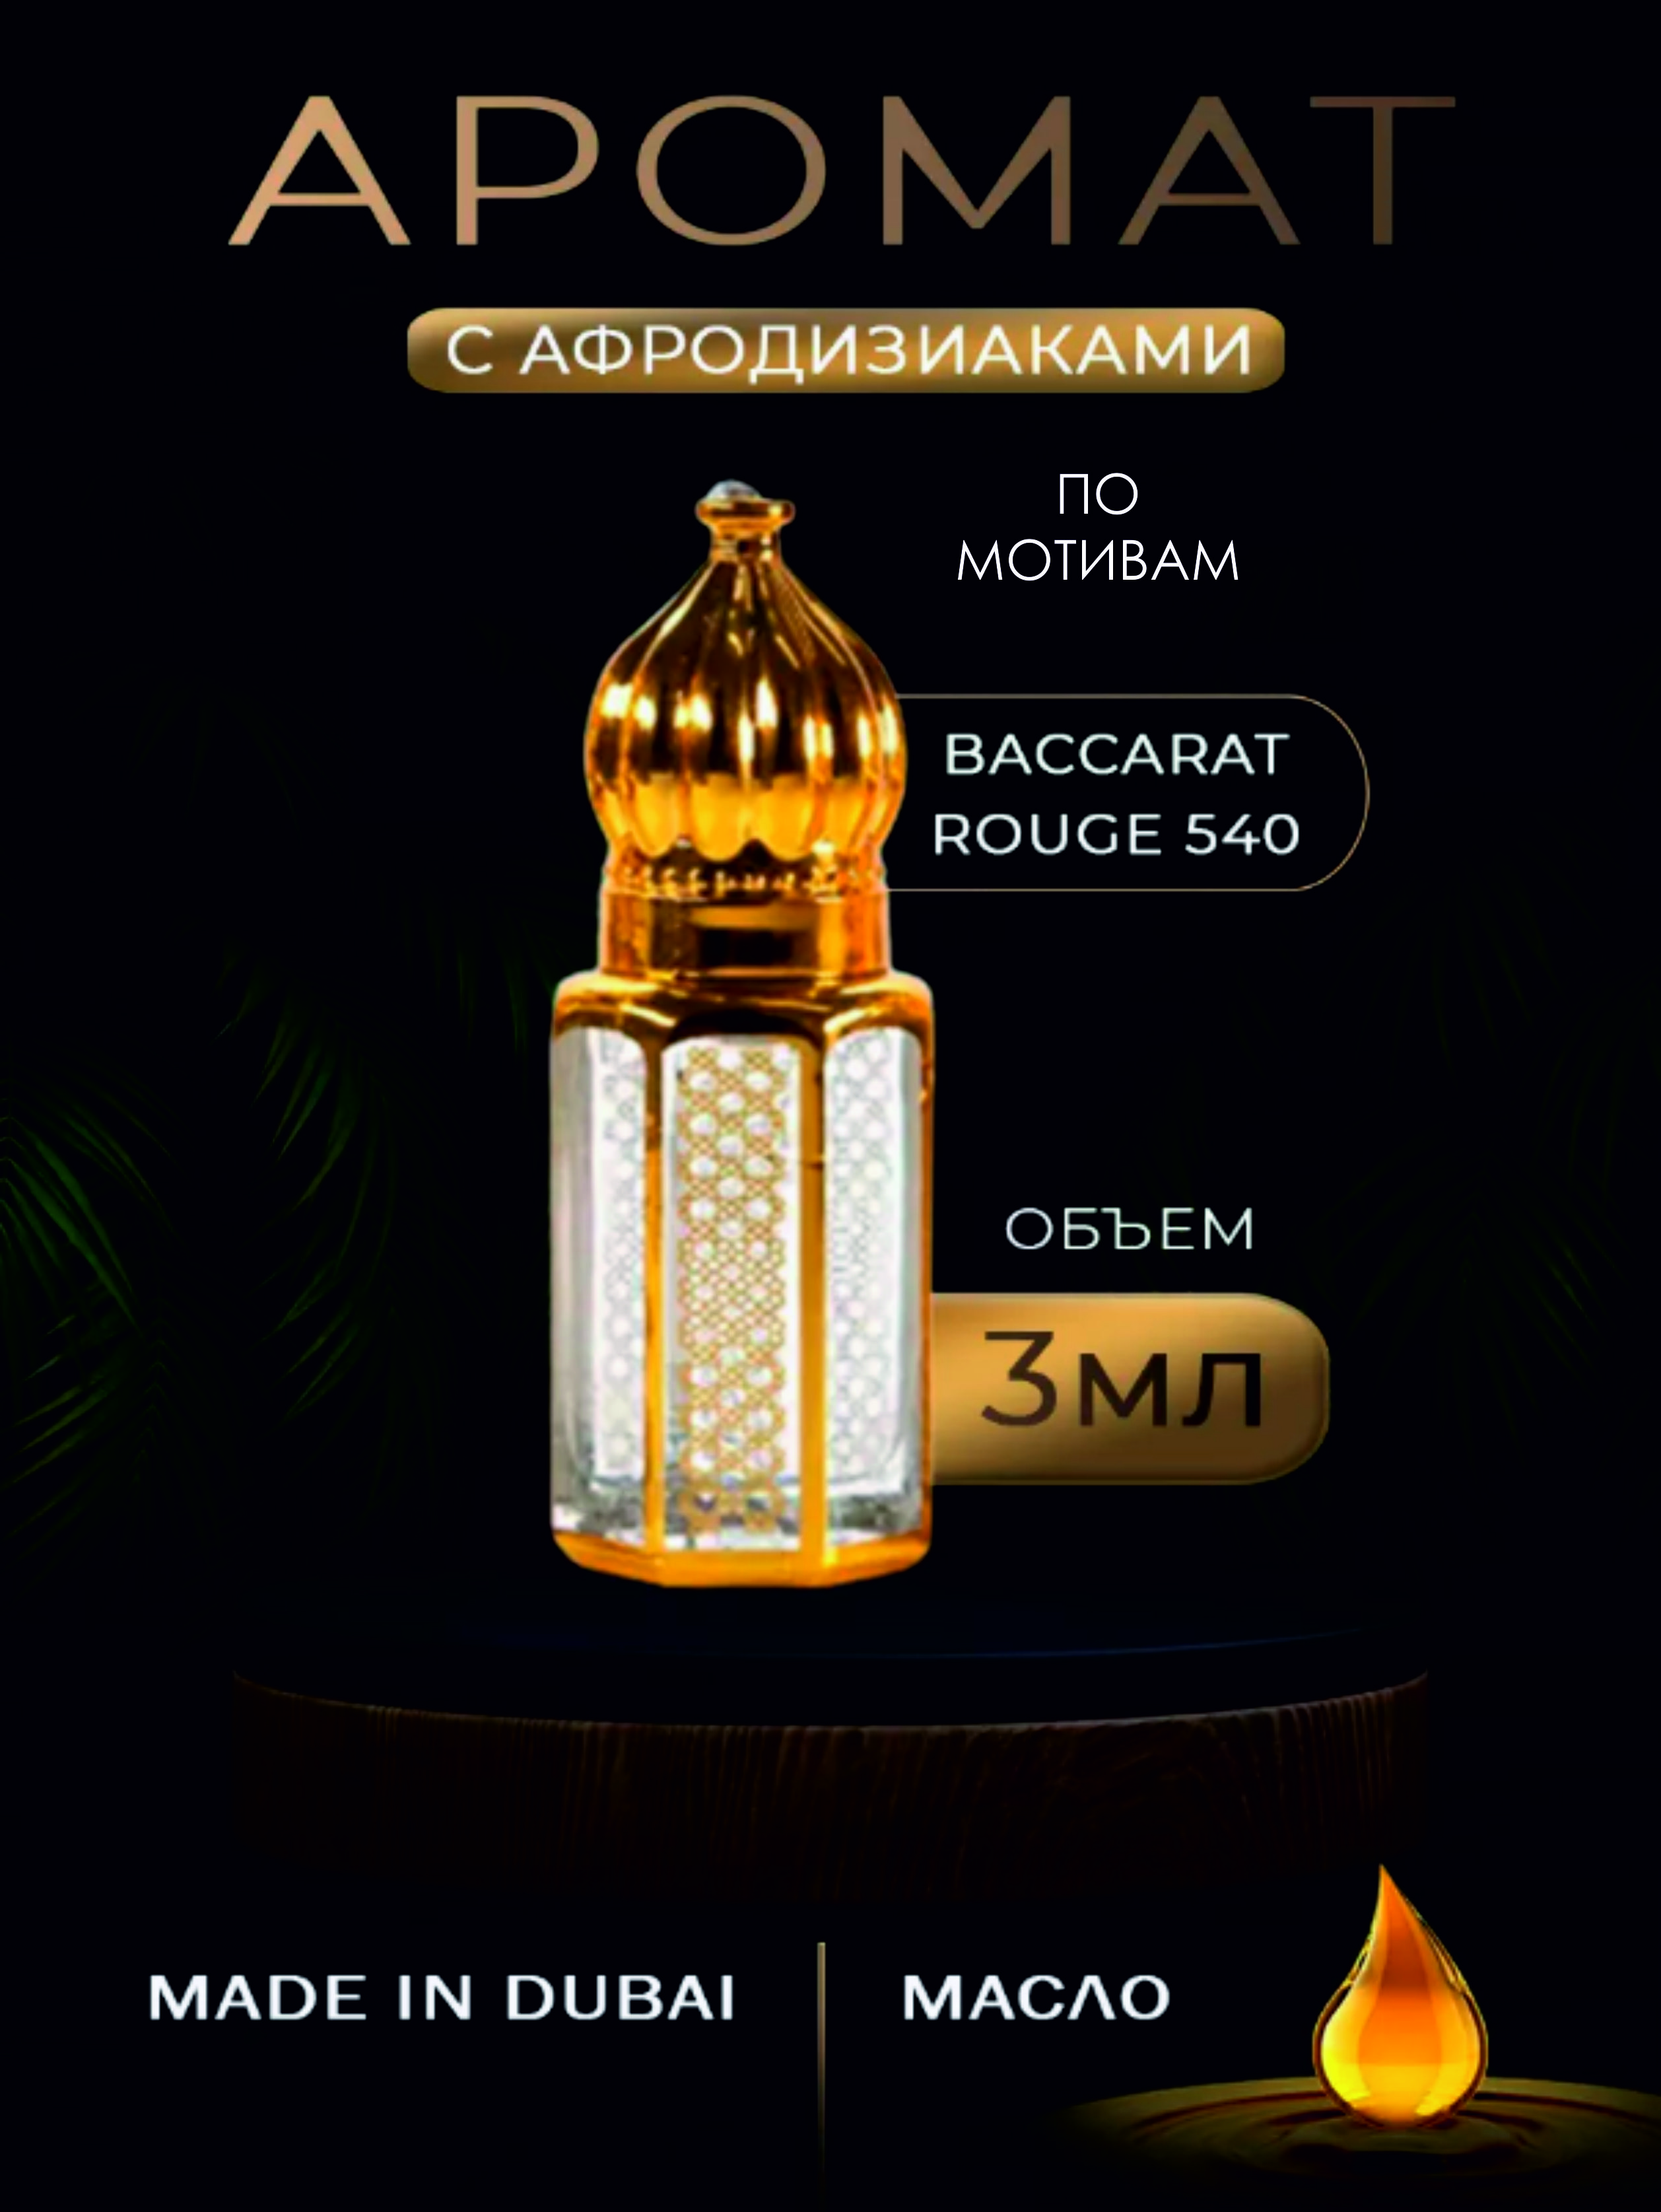 Масляные духи Dubai shop official по мотивам BACCARAT ROUGE 540 3 мл